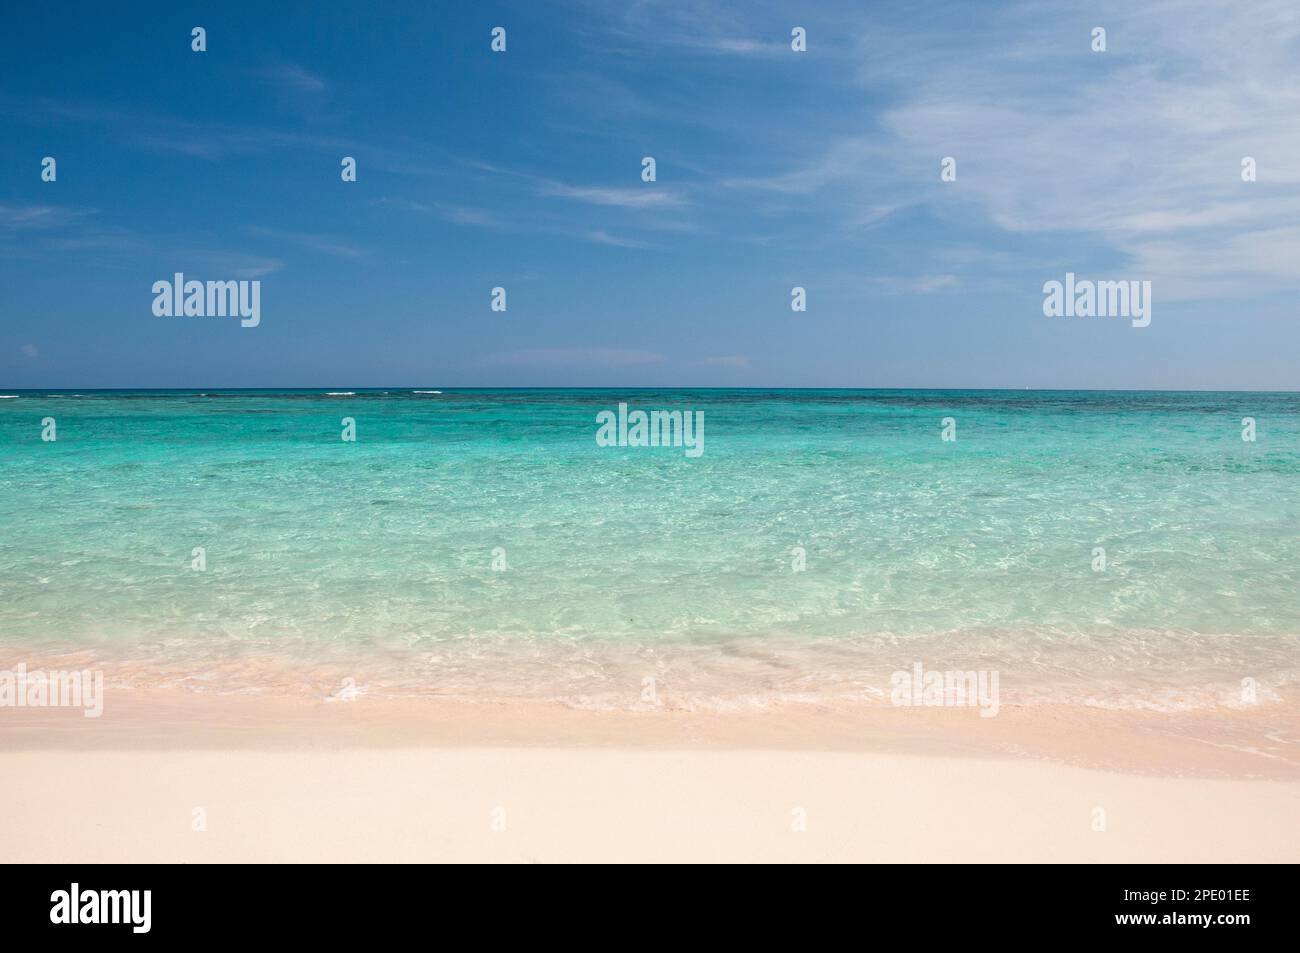 Immagine di sfondo di una spiaggia deserta con sabbia bianca e mare cristallino contro il cielo blu. Concetto di fuga dallo stress quotidiano, dalla vacanza e dal rel Foto Stock